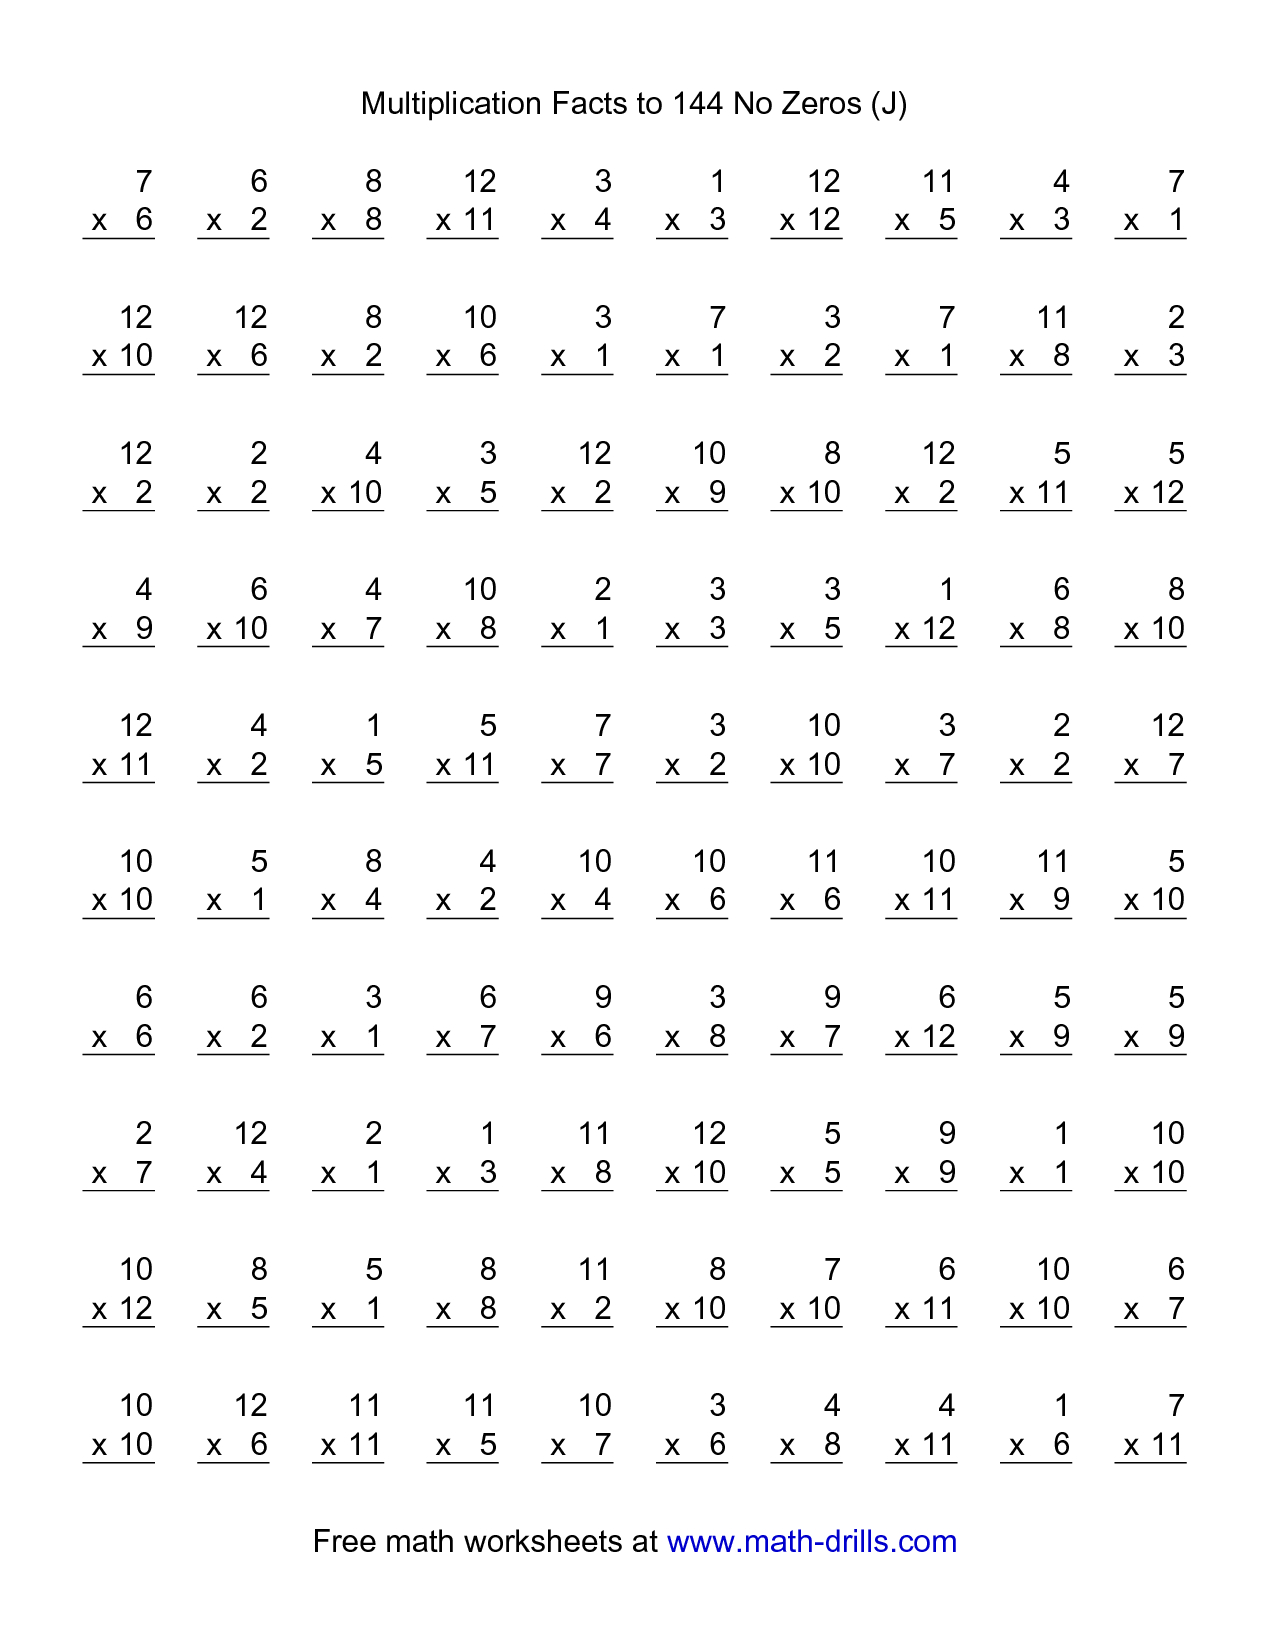 Multiplication Practice Worksheets Pdf Grade 4